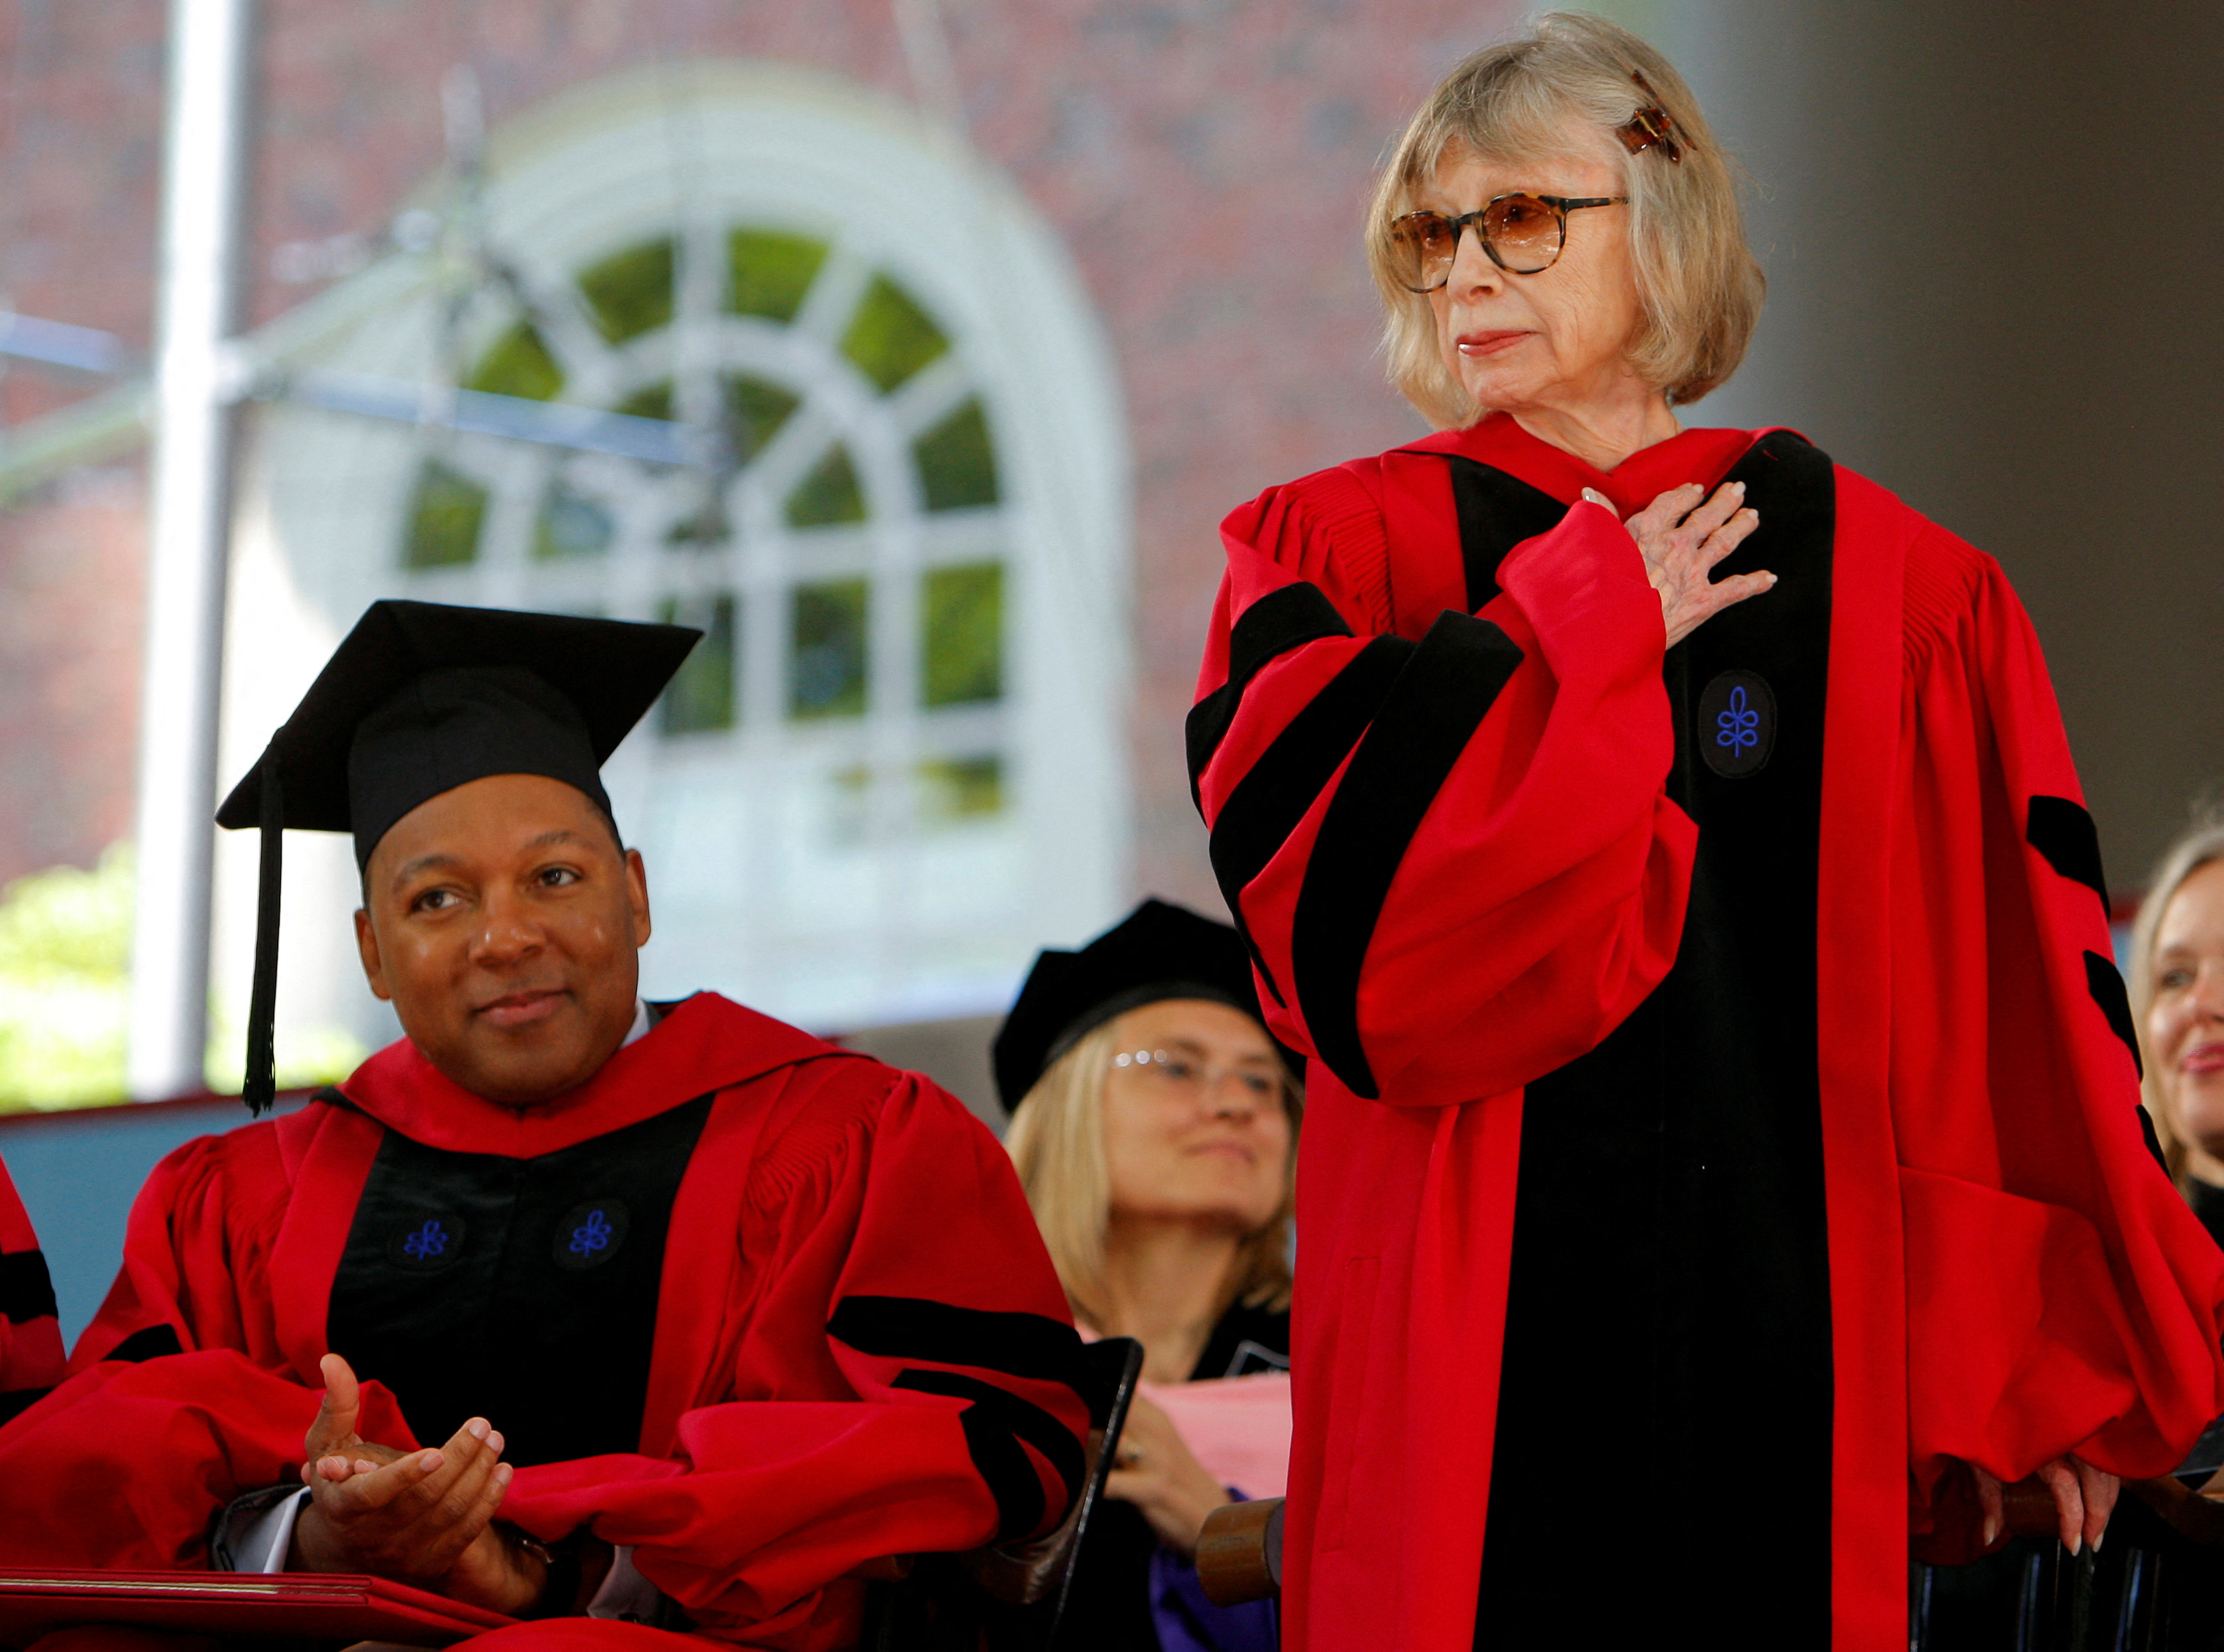 El músico Wynton Marsalis (izquierda) aplaude mientras la autora Joan Didion (derecha) recibe un título honorario de Doctor en Letras en la 358a graduación de la Universidad de Harvard en Cambridge en 2009 (REUTERS / Brian Snyder)